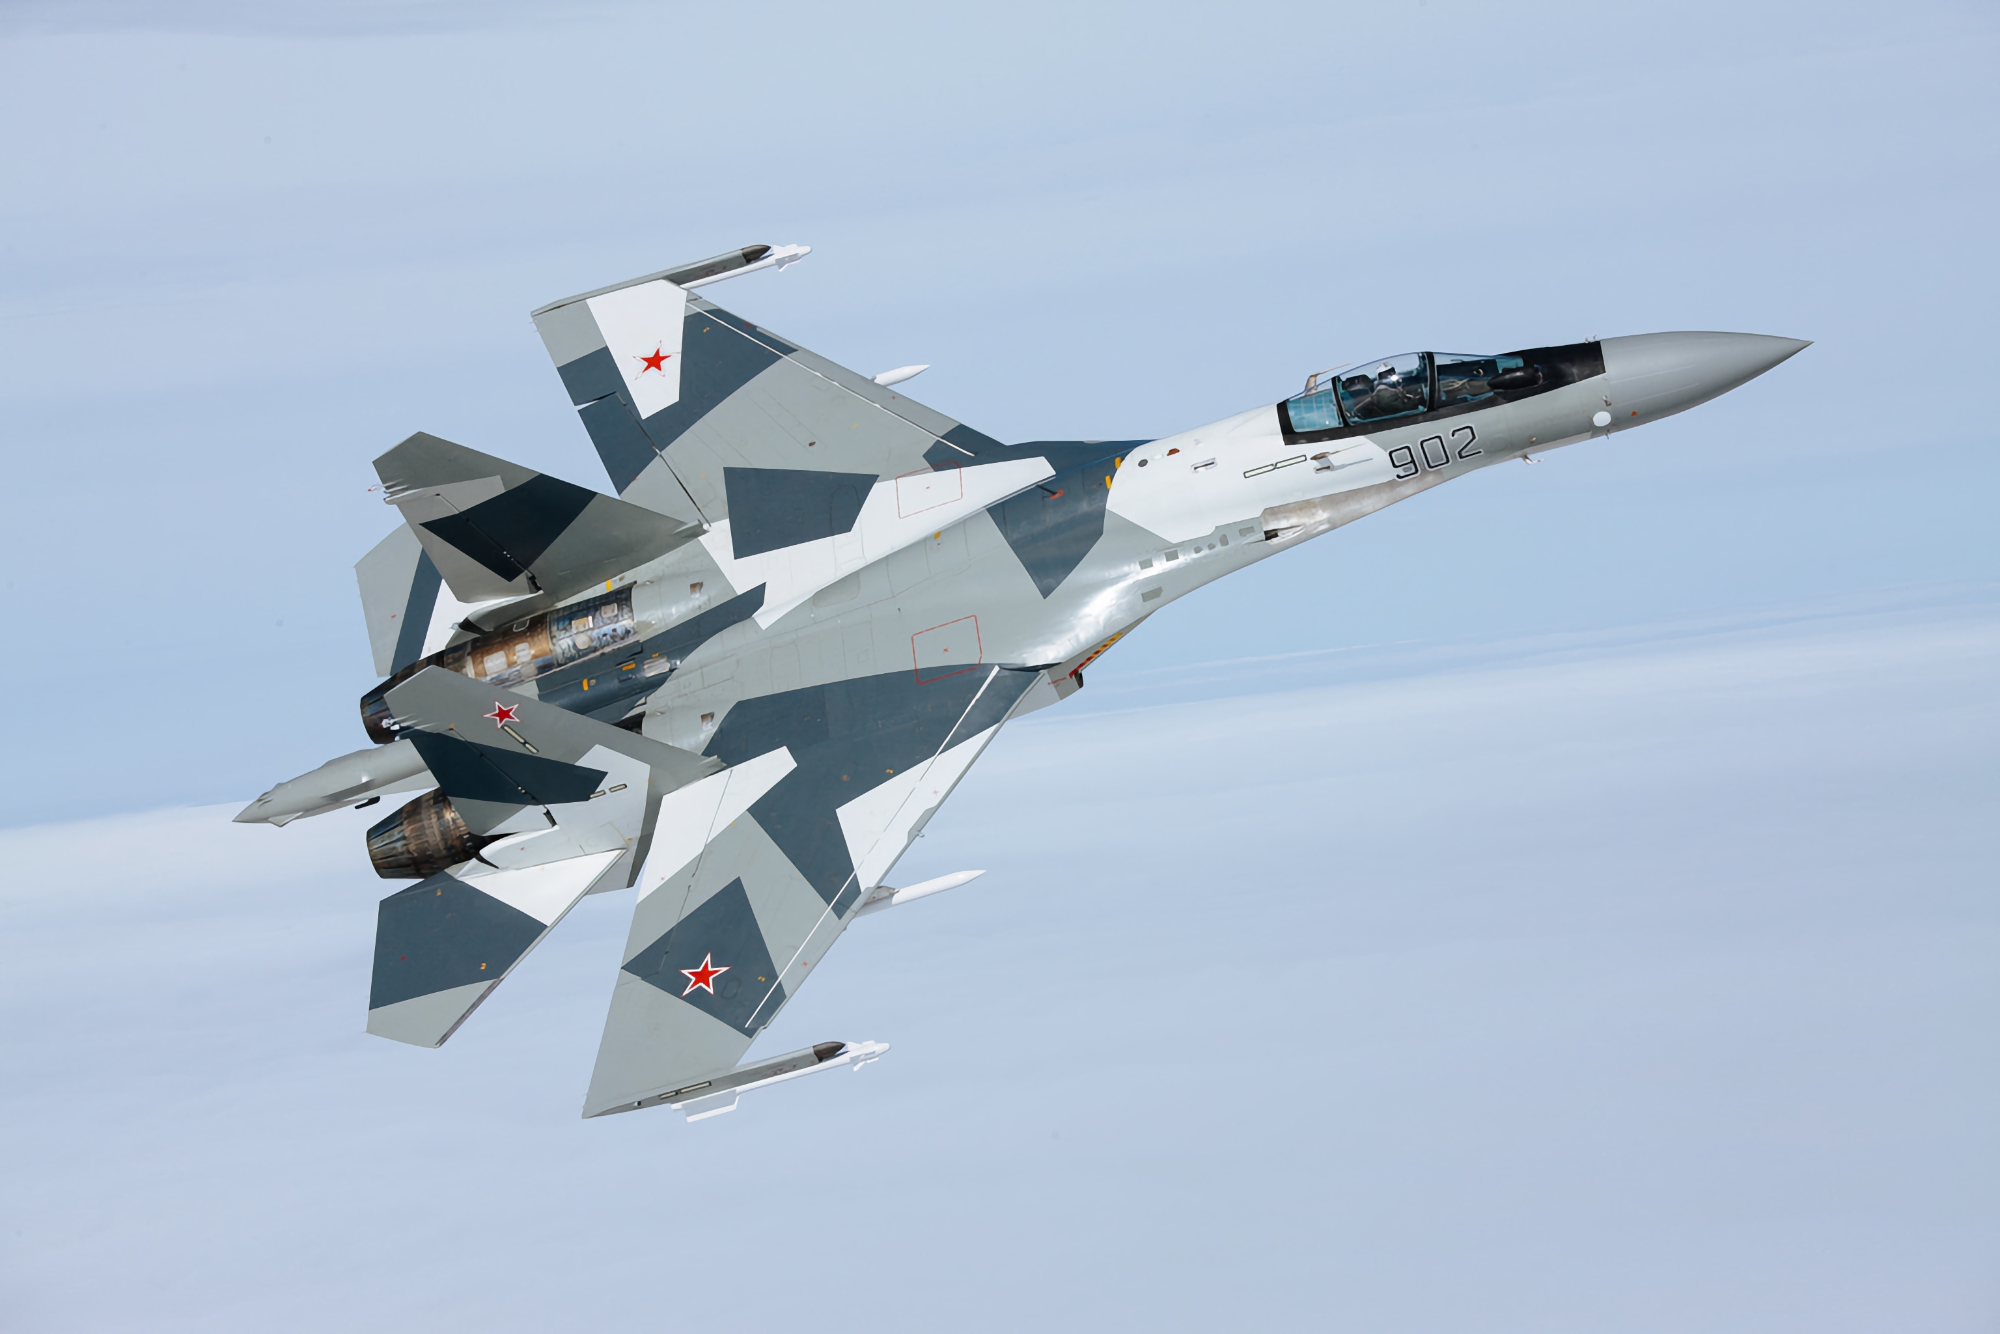 Moins 18 000 000 $ : la défense aérienne de l'Ukraine a abattu un avion de chasse russe Su-35